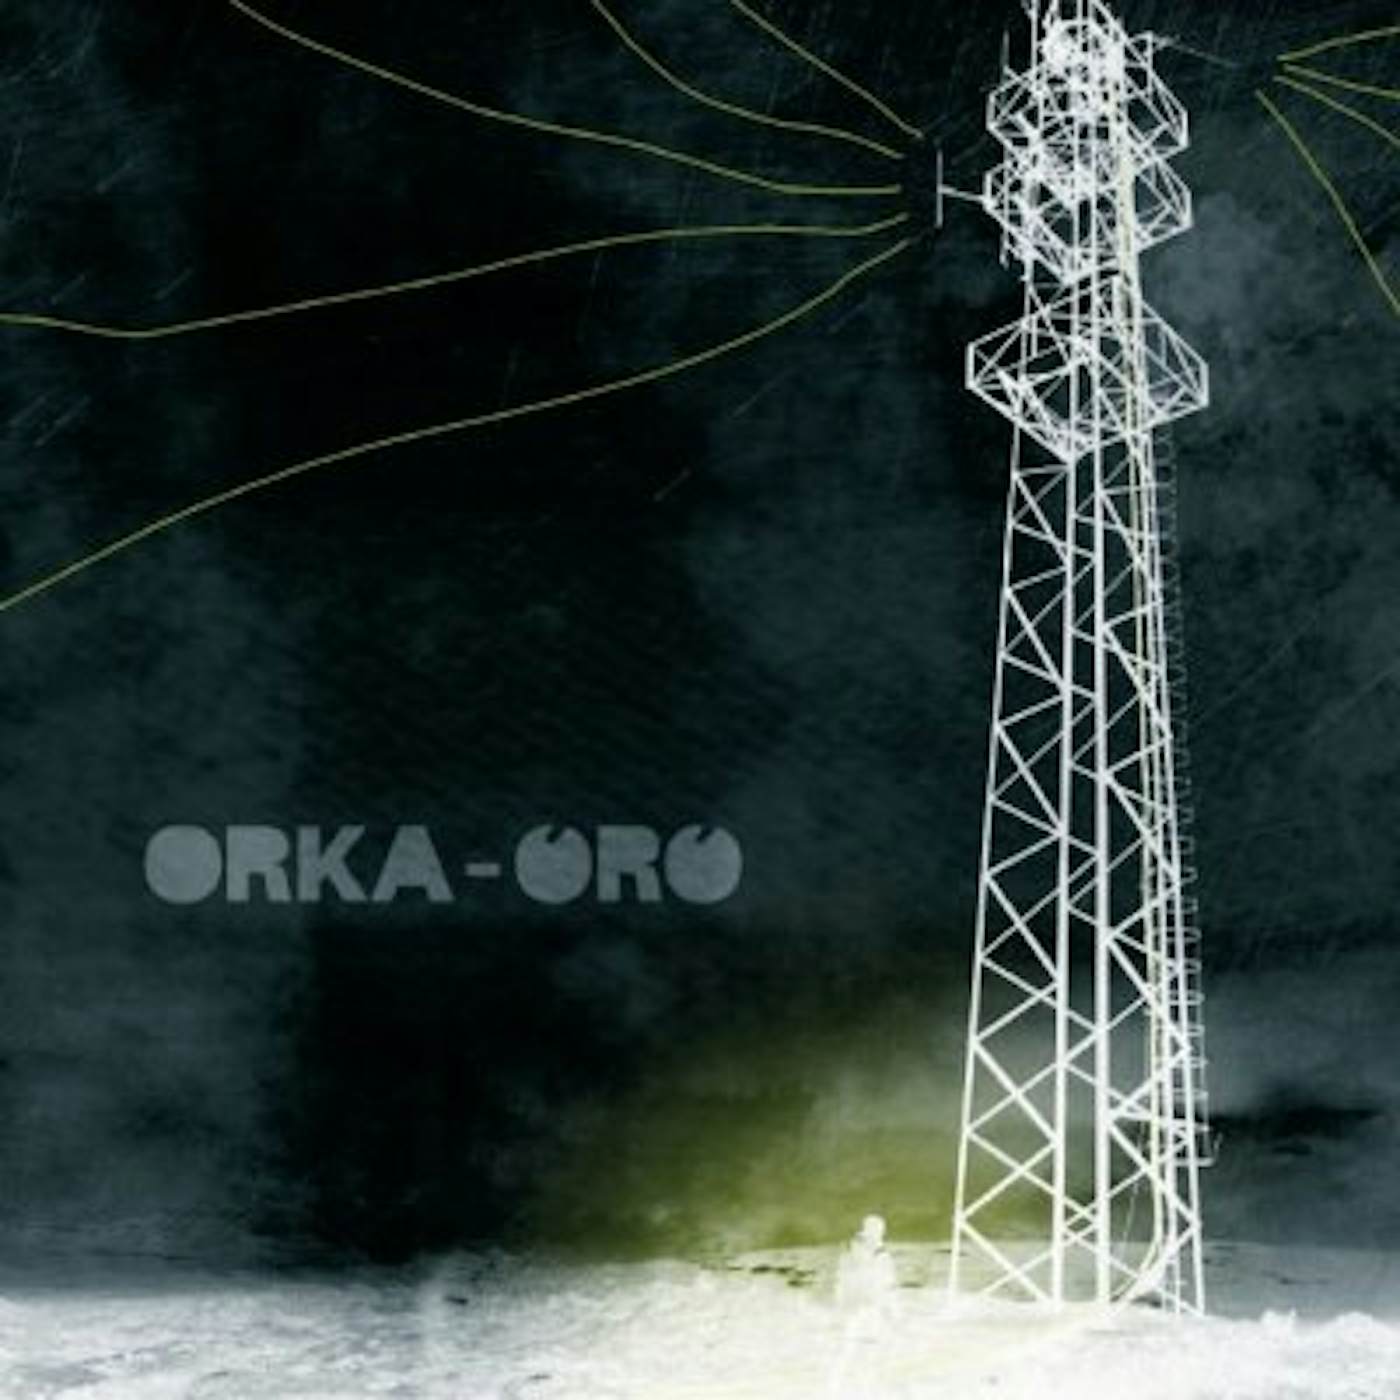 ORKA ORO Vinyl Record